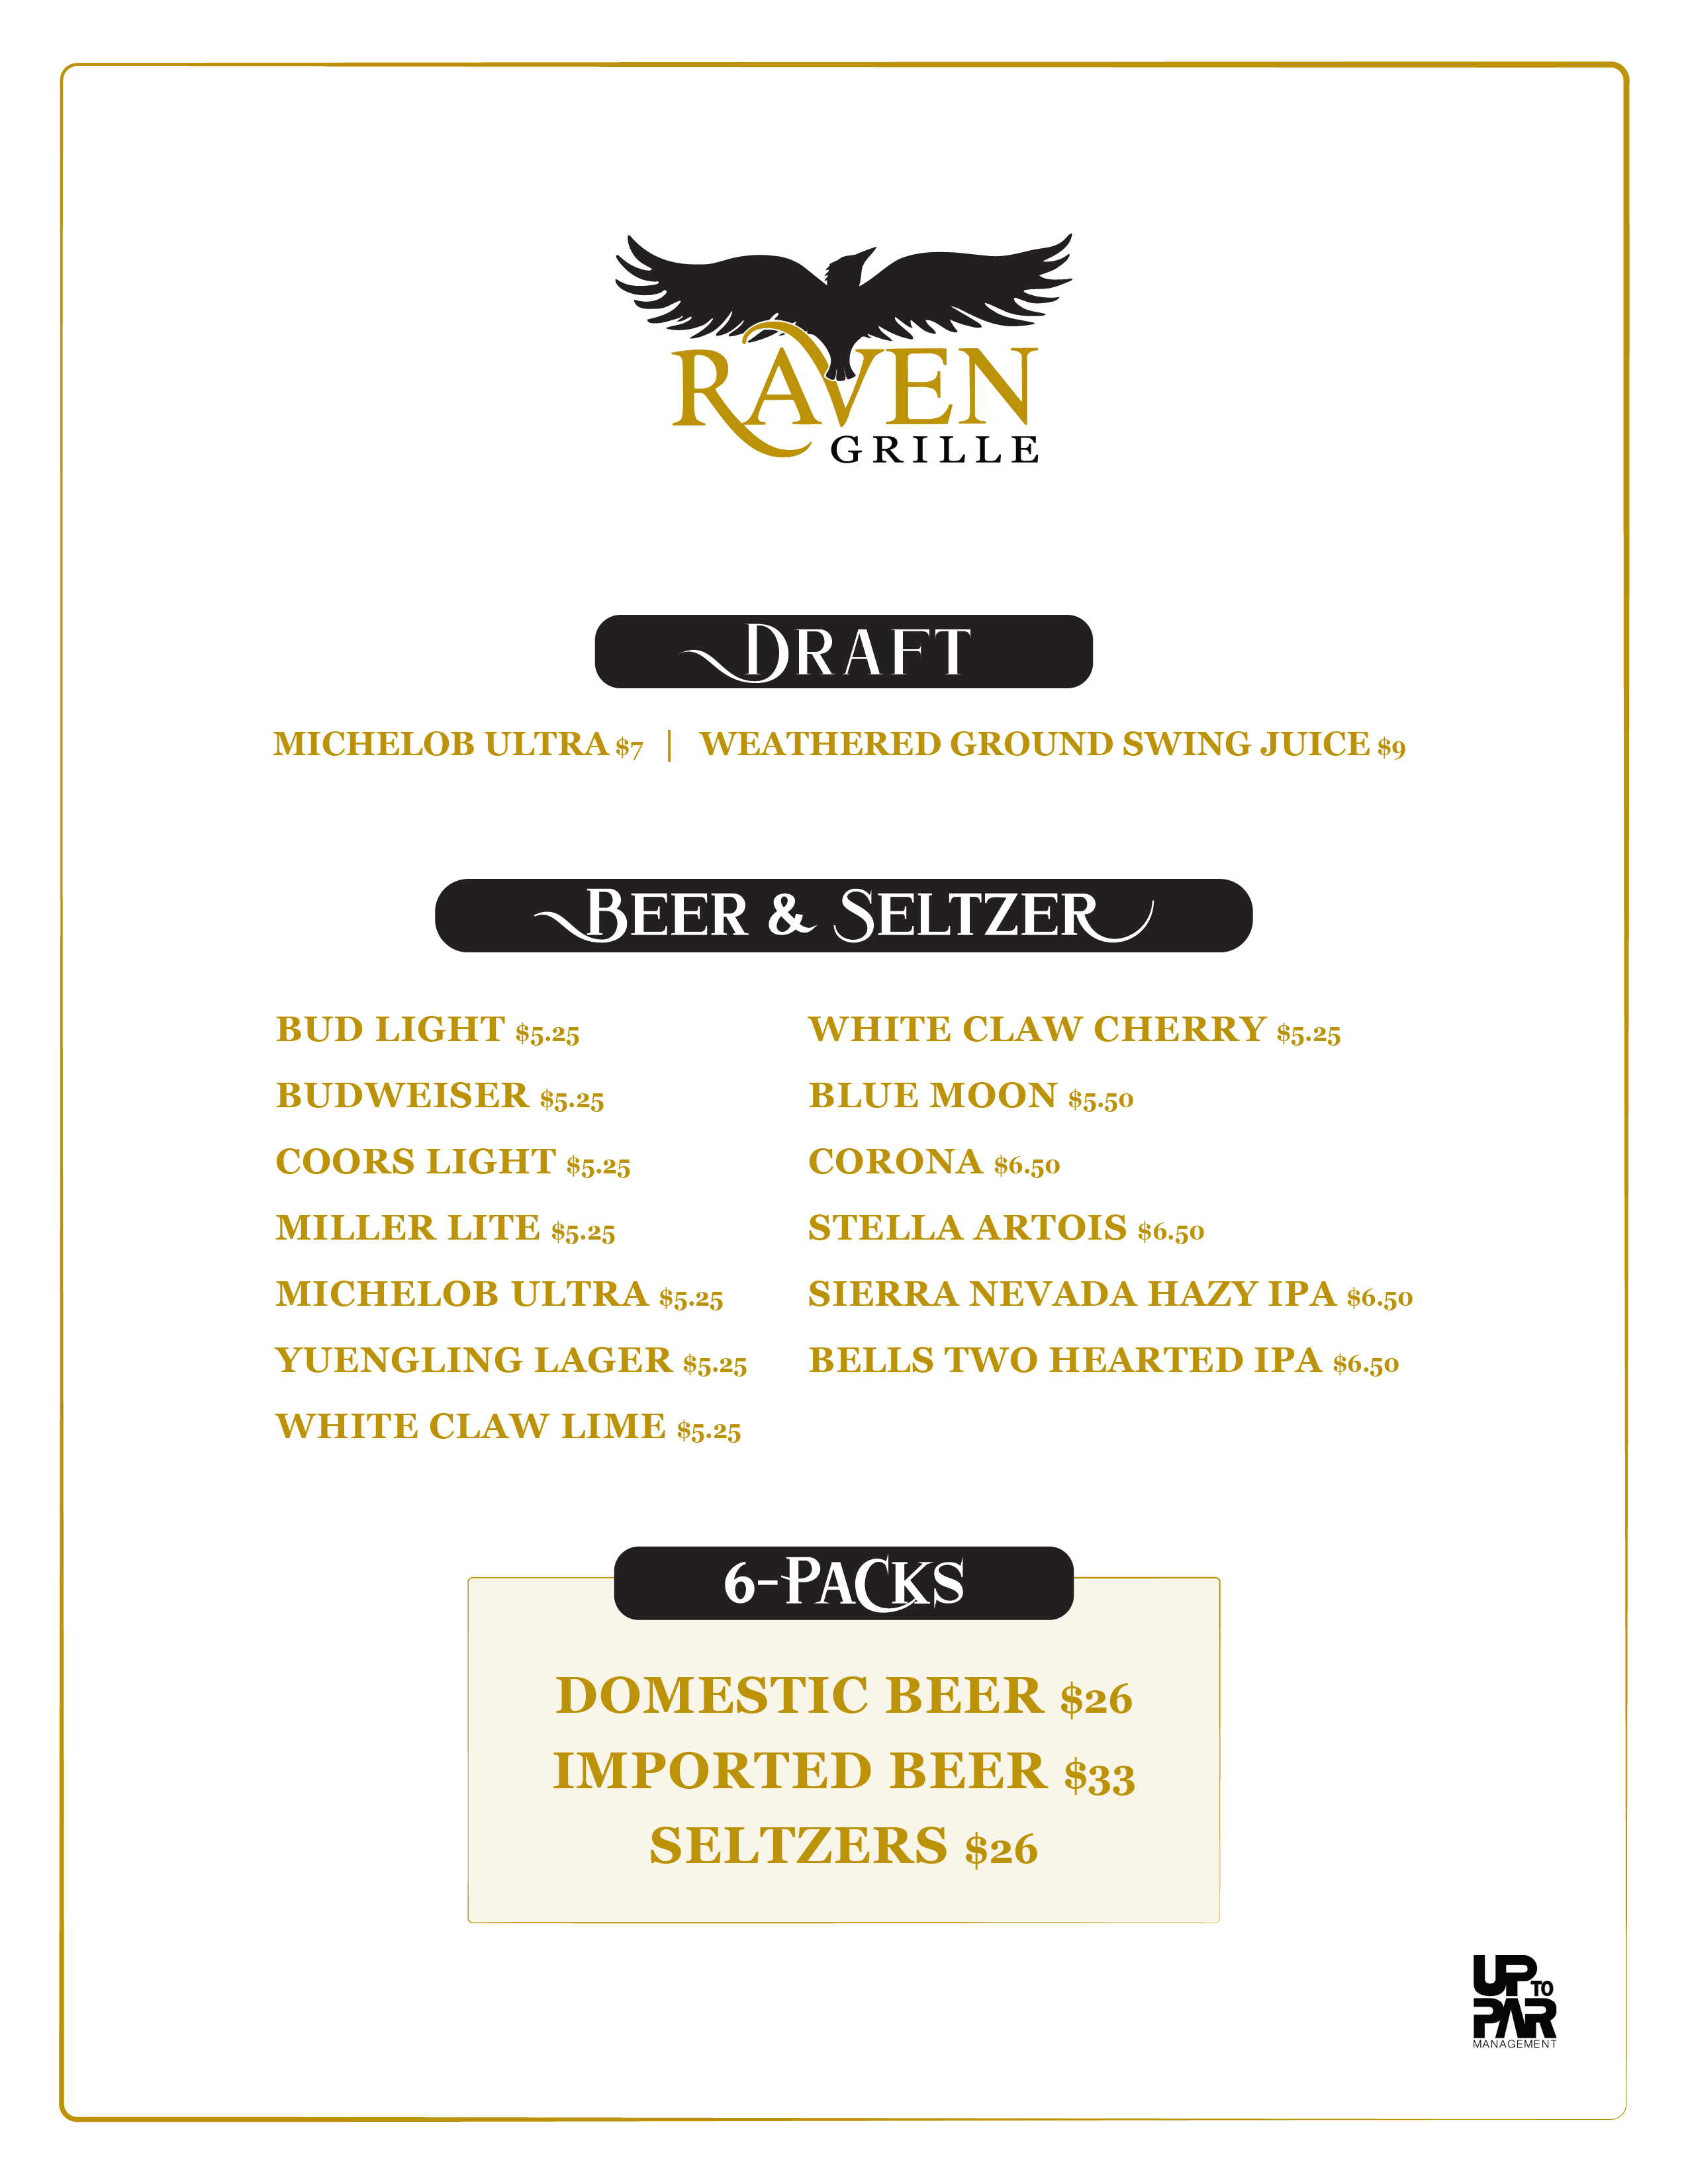 Raven Grille menu at Snowshoe Mountain Resort